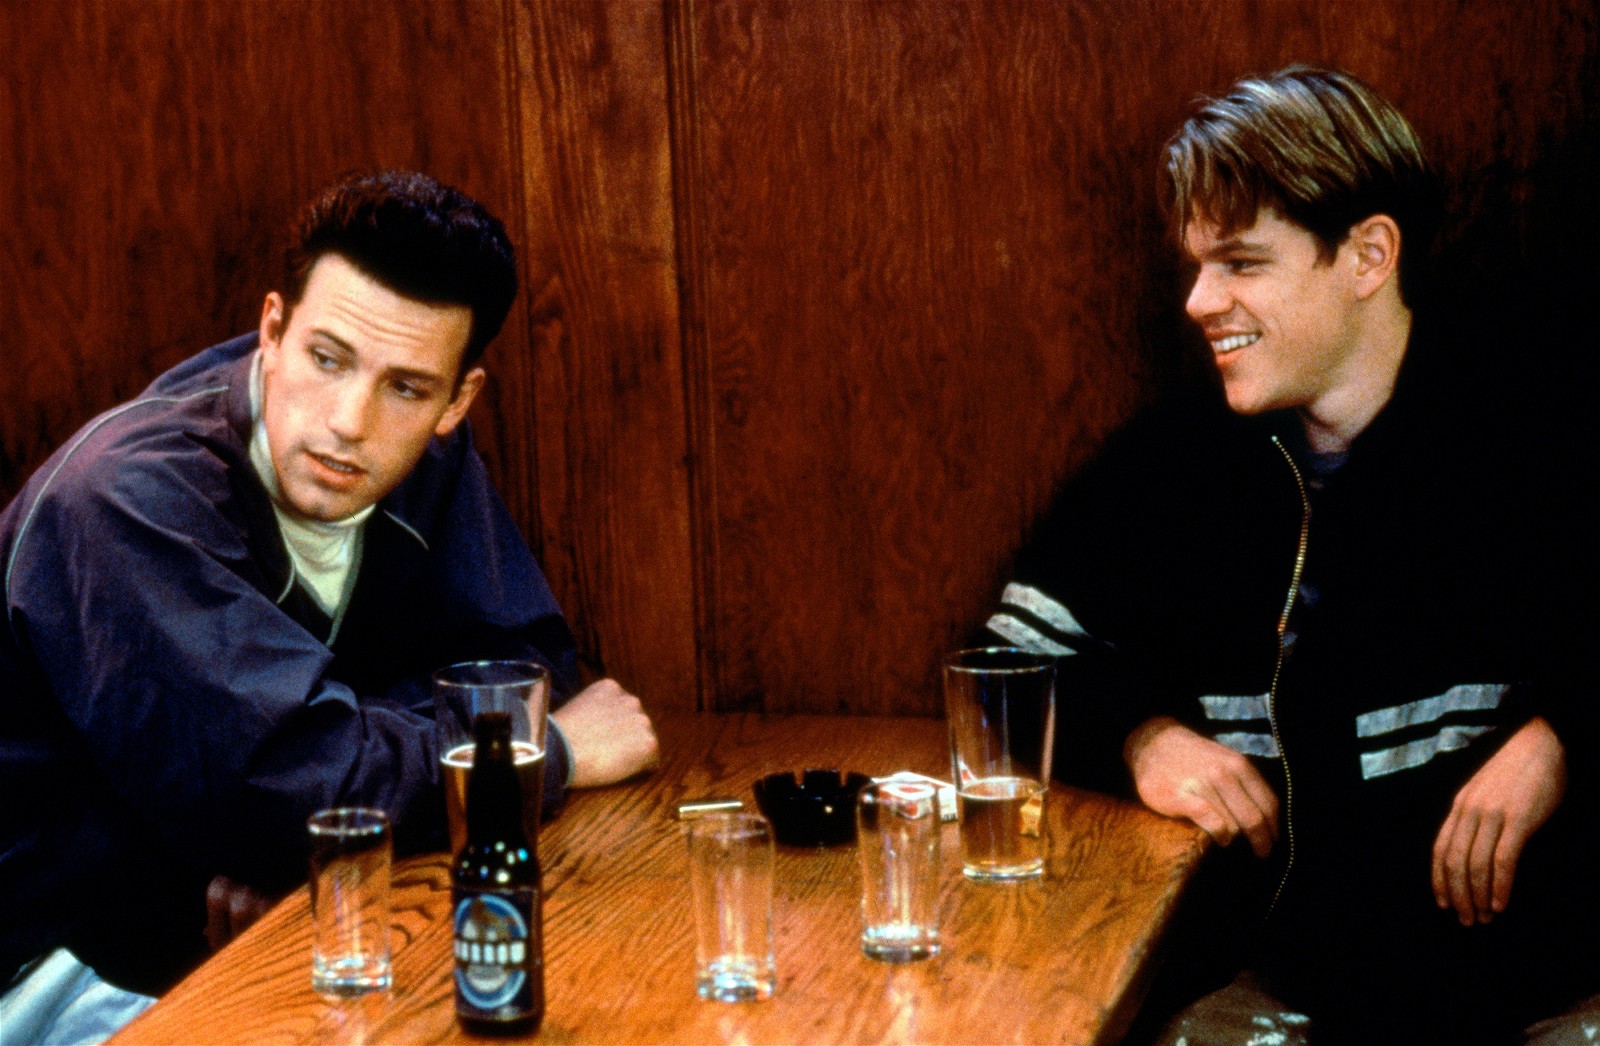 Ben Affleck and Matt Damon in a still from Good Will Hunting